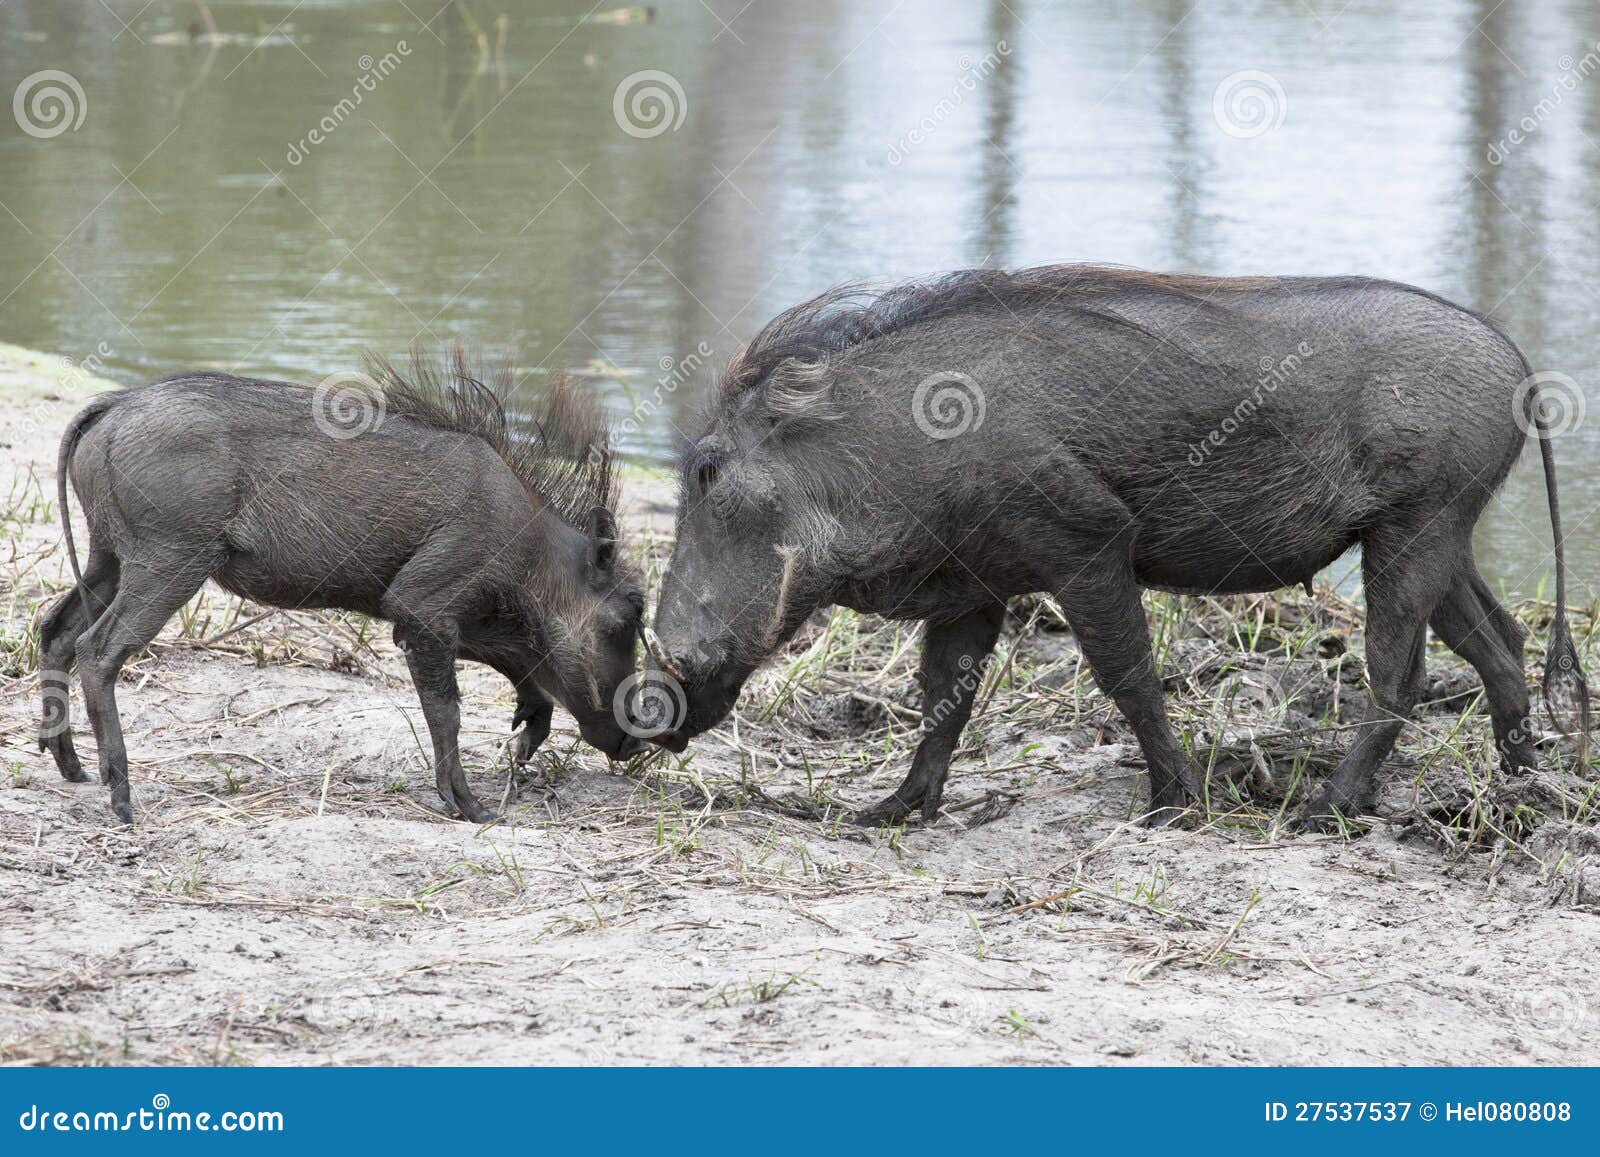 warthog with piglet near waterhole in botswana